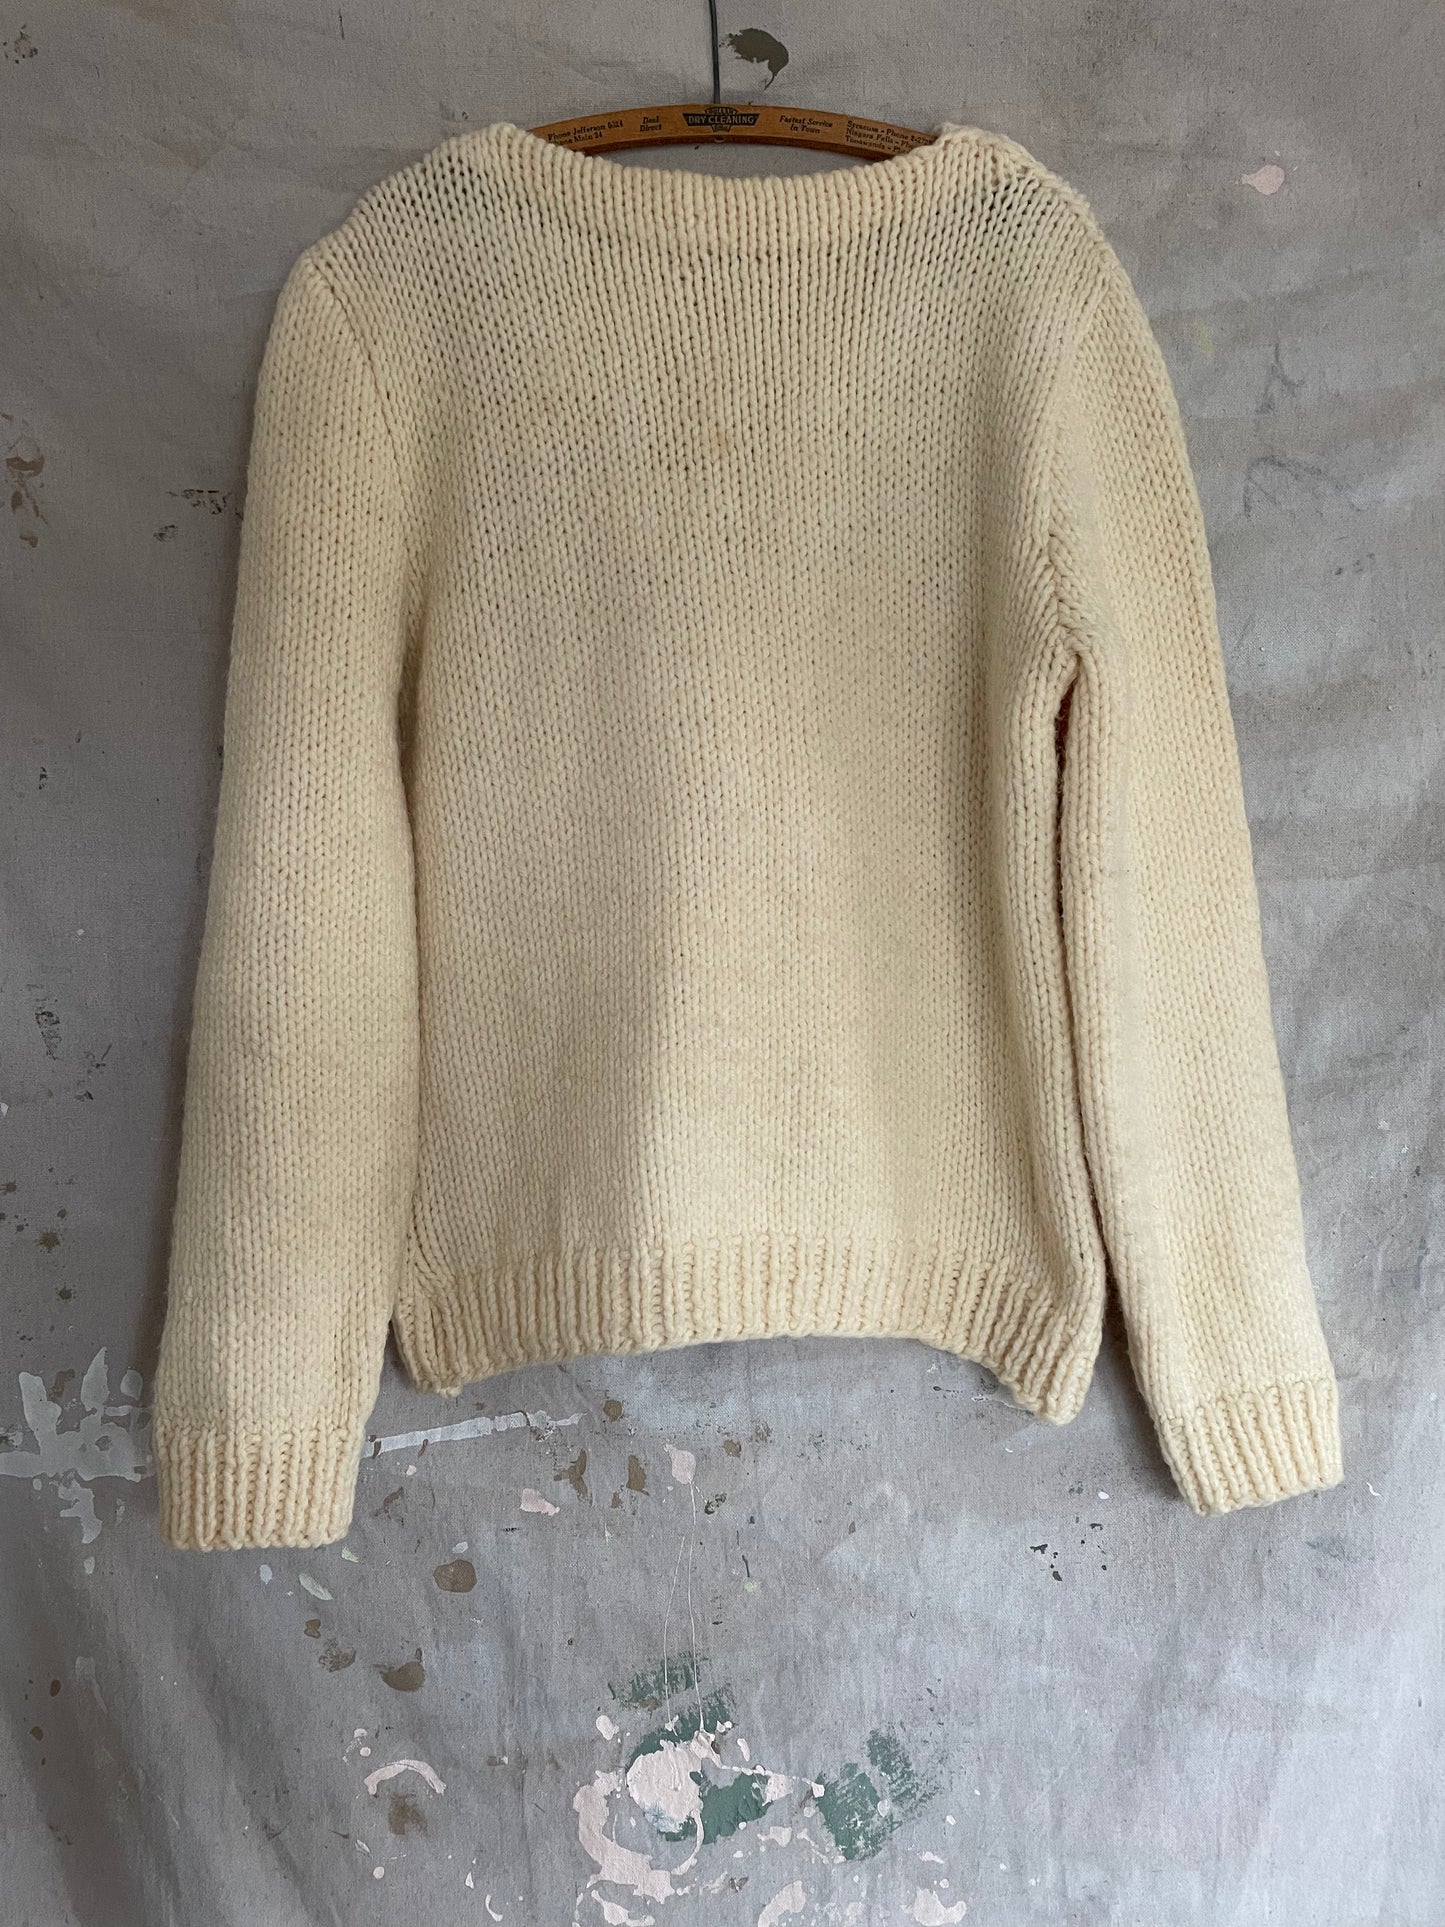 70s/80s Handknit Sweater In Ecru